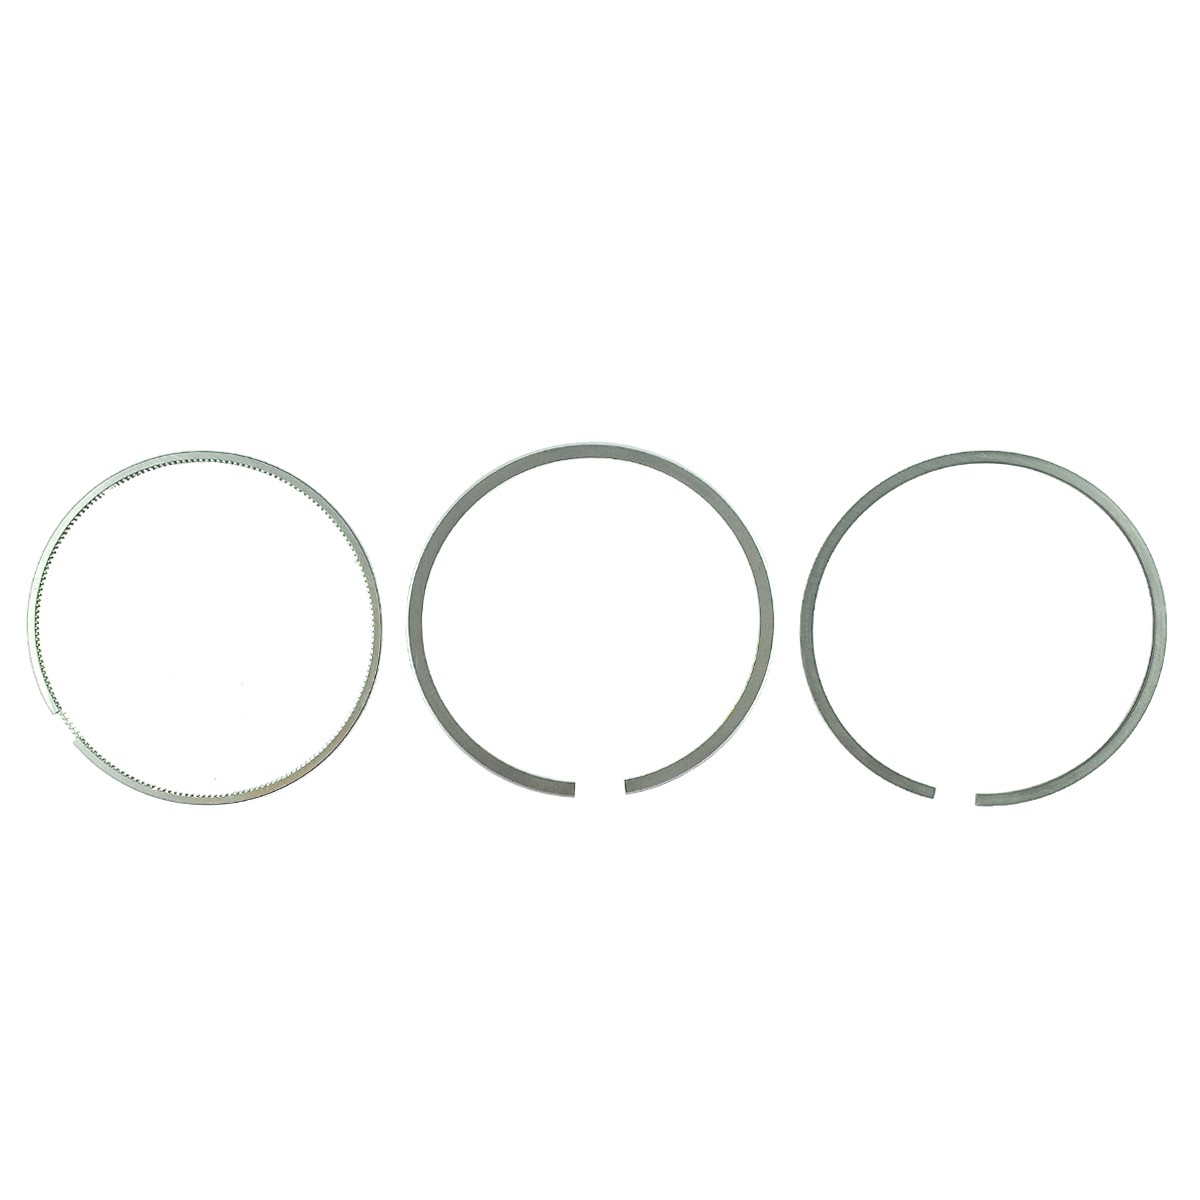 Pístní kroužky / Ø 86 mm / 2,50 x 2,00 x 4,50 mm / Toyosha 3S150/S110 / Hinomoto E16/E324/E2804 /